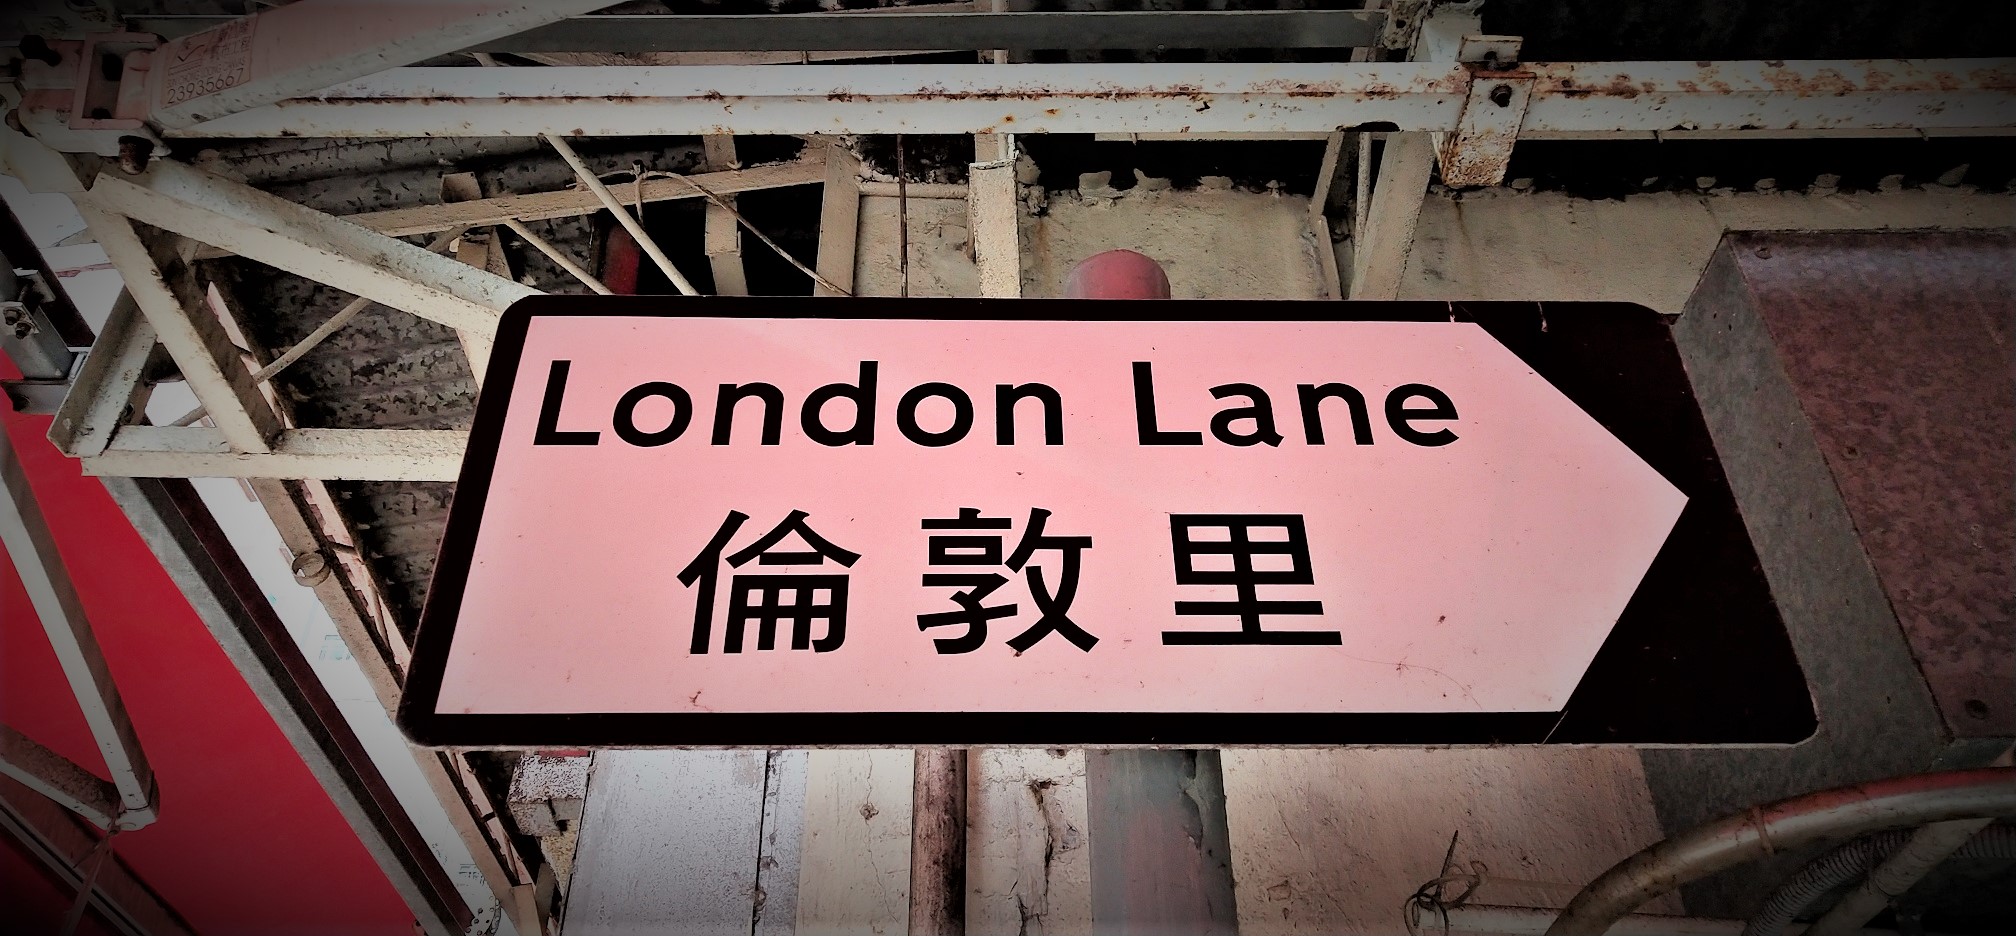 London Lane sign